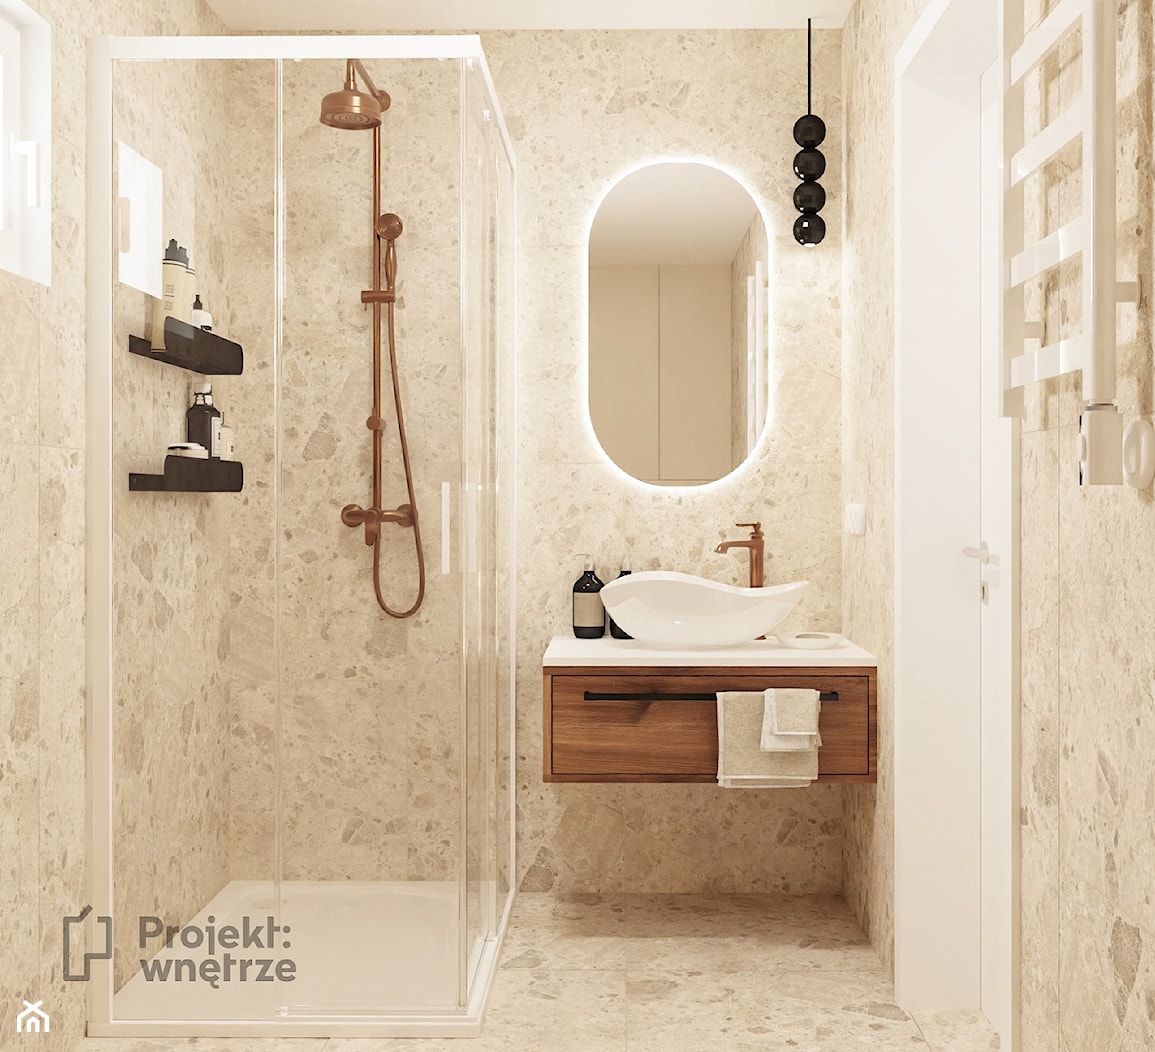 Mała łazienka, styl nowoczesny, kolor beżowy, japandi wabi sabi PROJEKT:WNĘTRZ - zdjęcie od PROJEKT: WNĘTRZE - Homebook